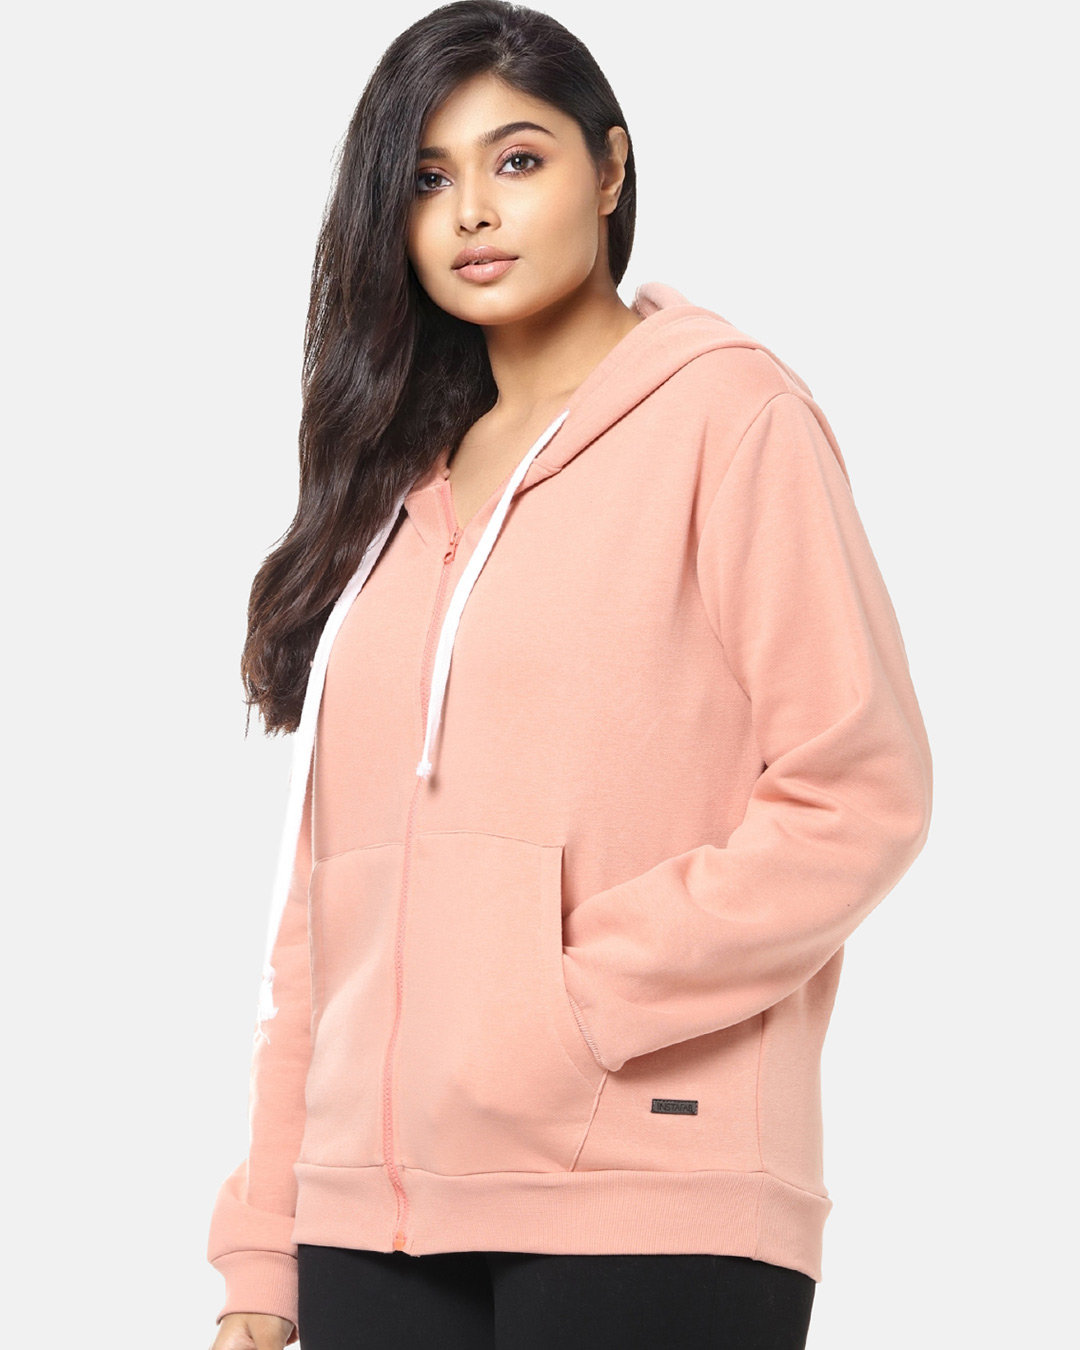 Shop Women's Plus Size Solid Stylish Casual Winter Zipper Hooded Sweatshirt-Back